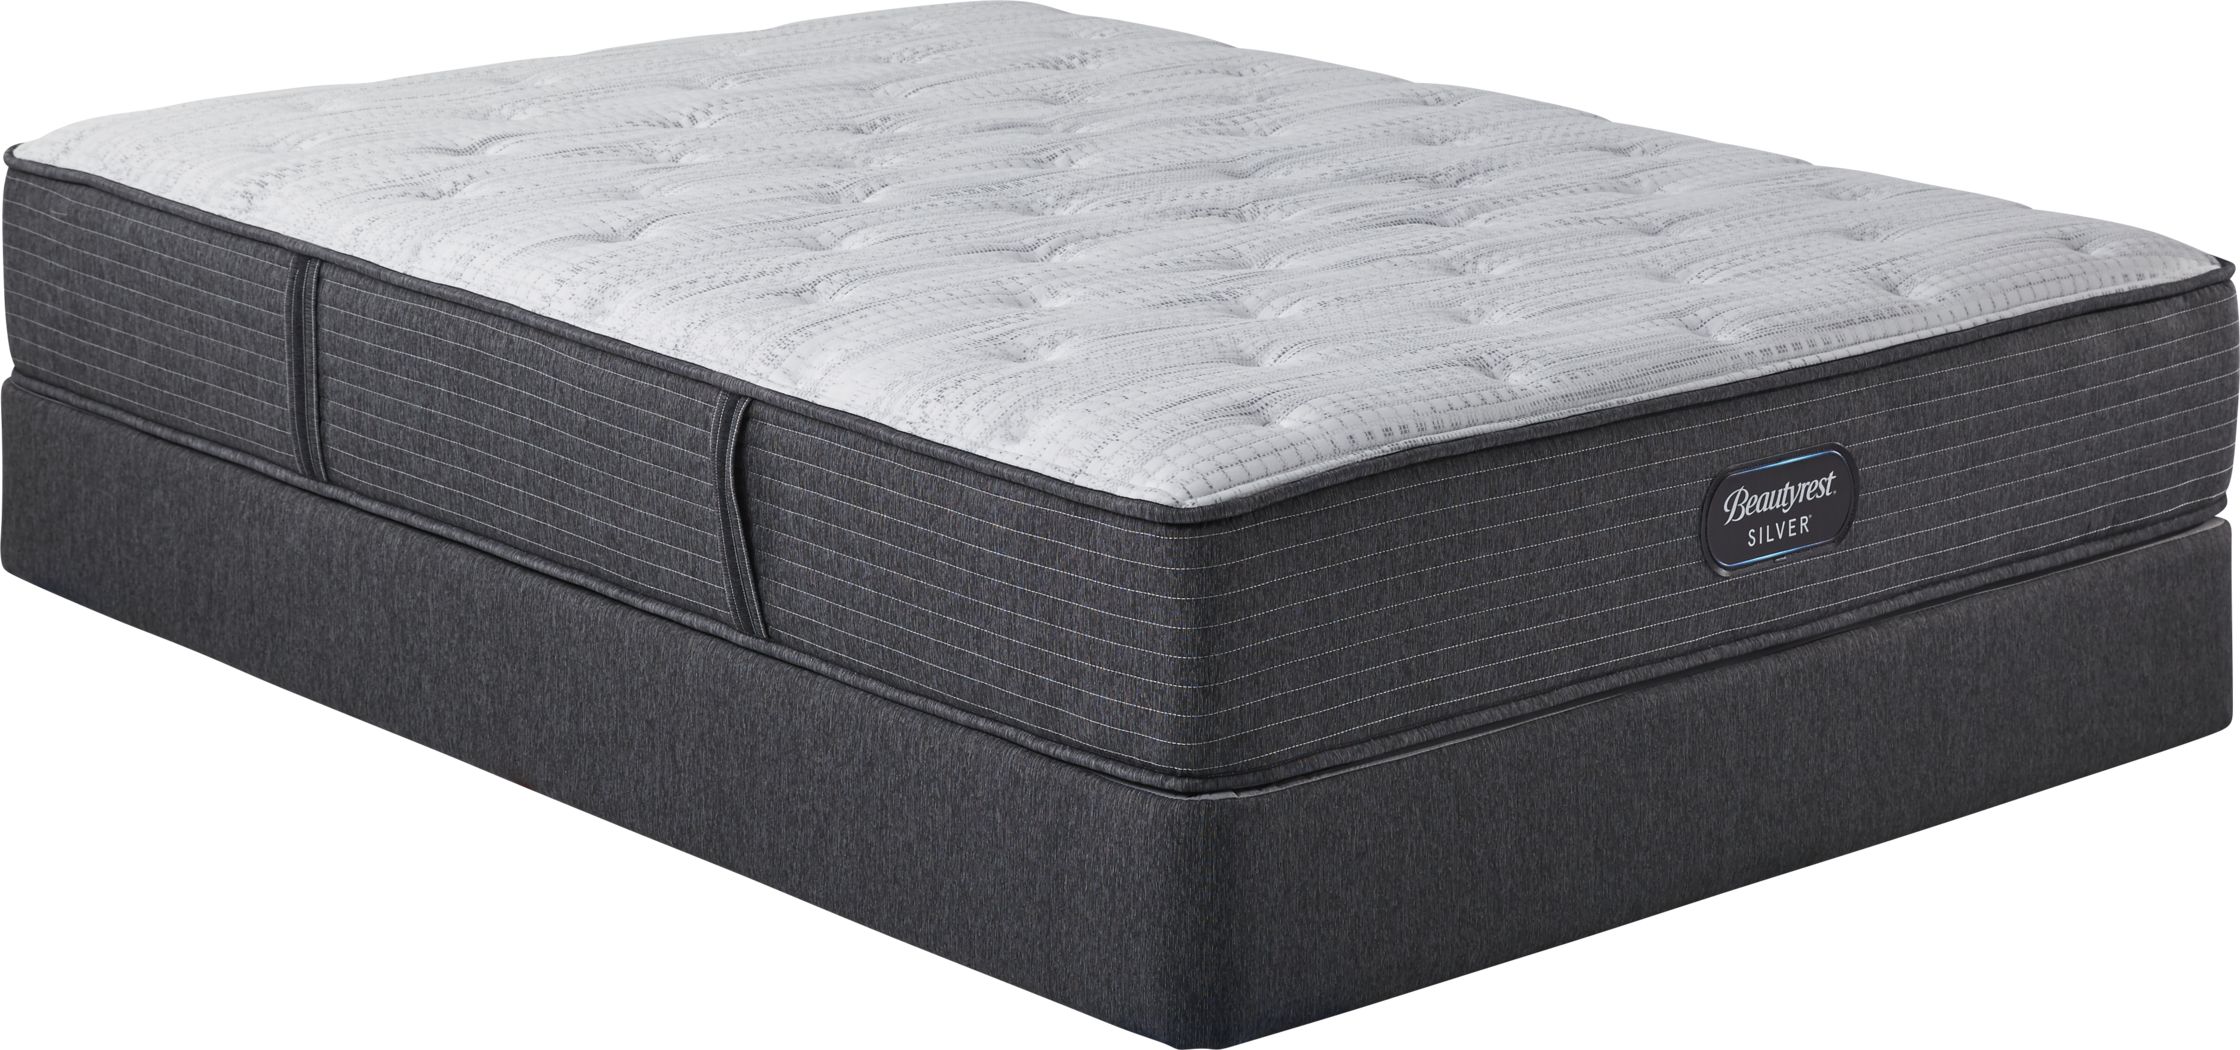 beautyrest full mattress set